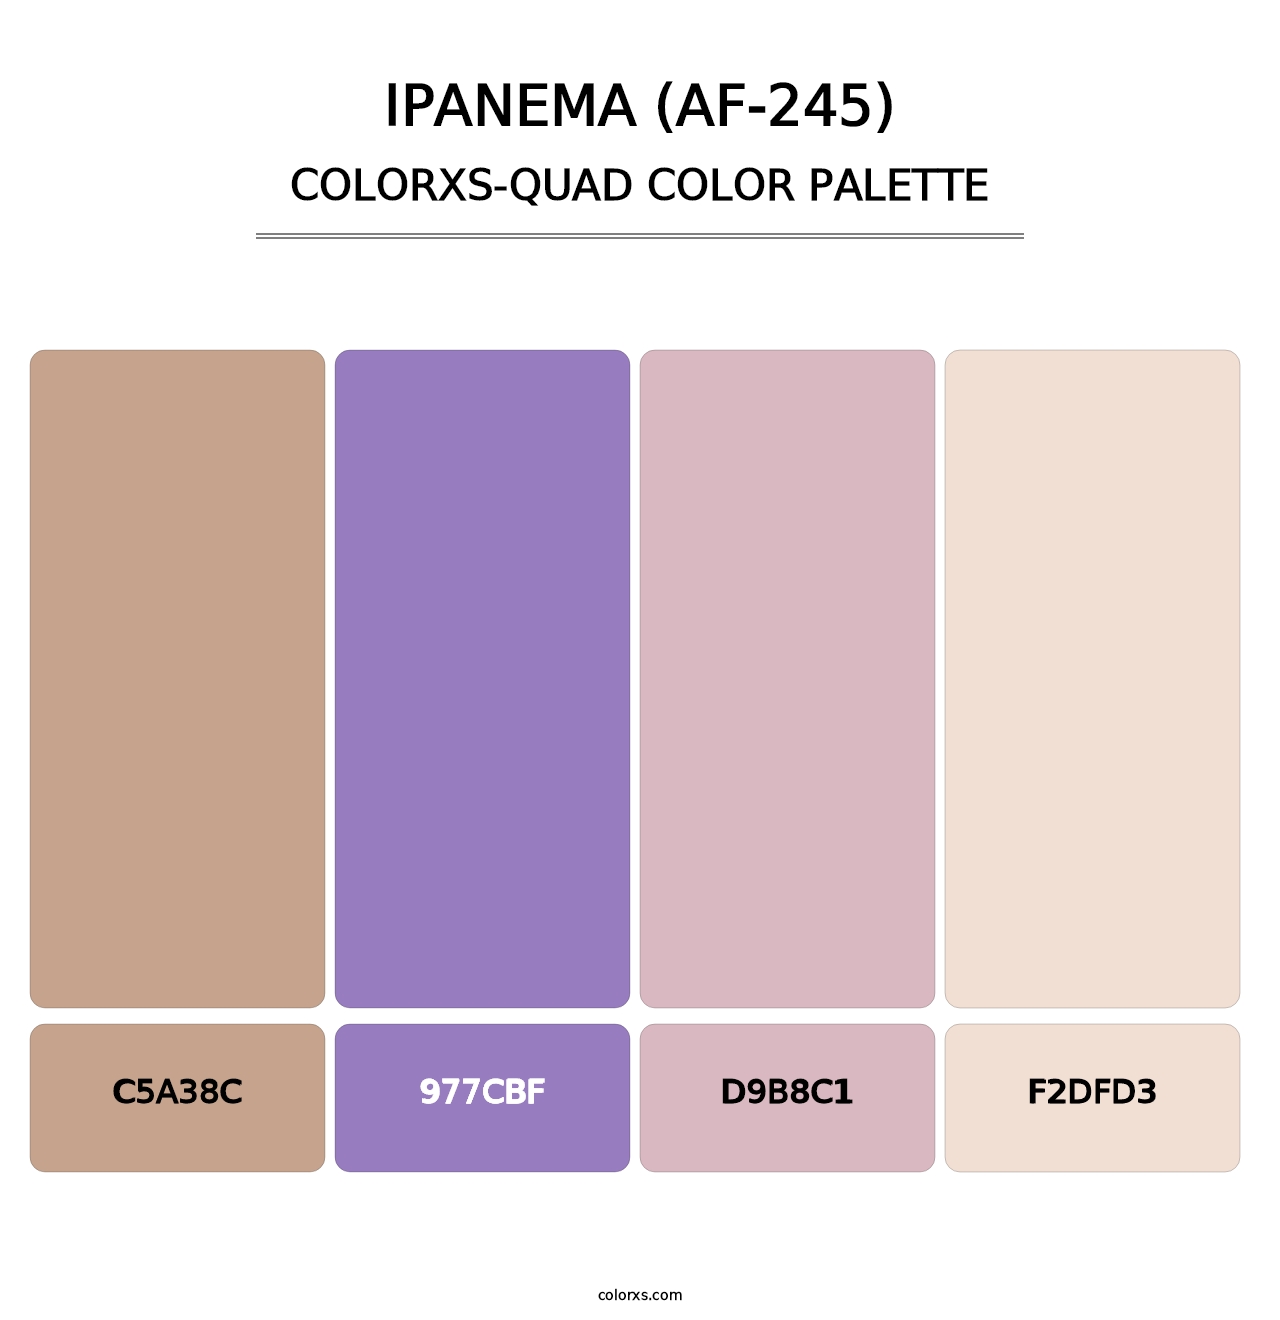 Ipanema (AF-245) - Colorxs Quad Palette